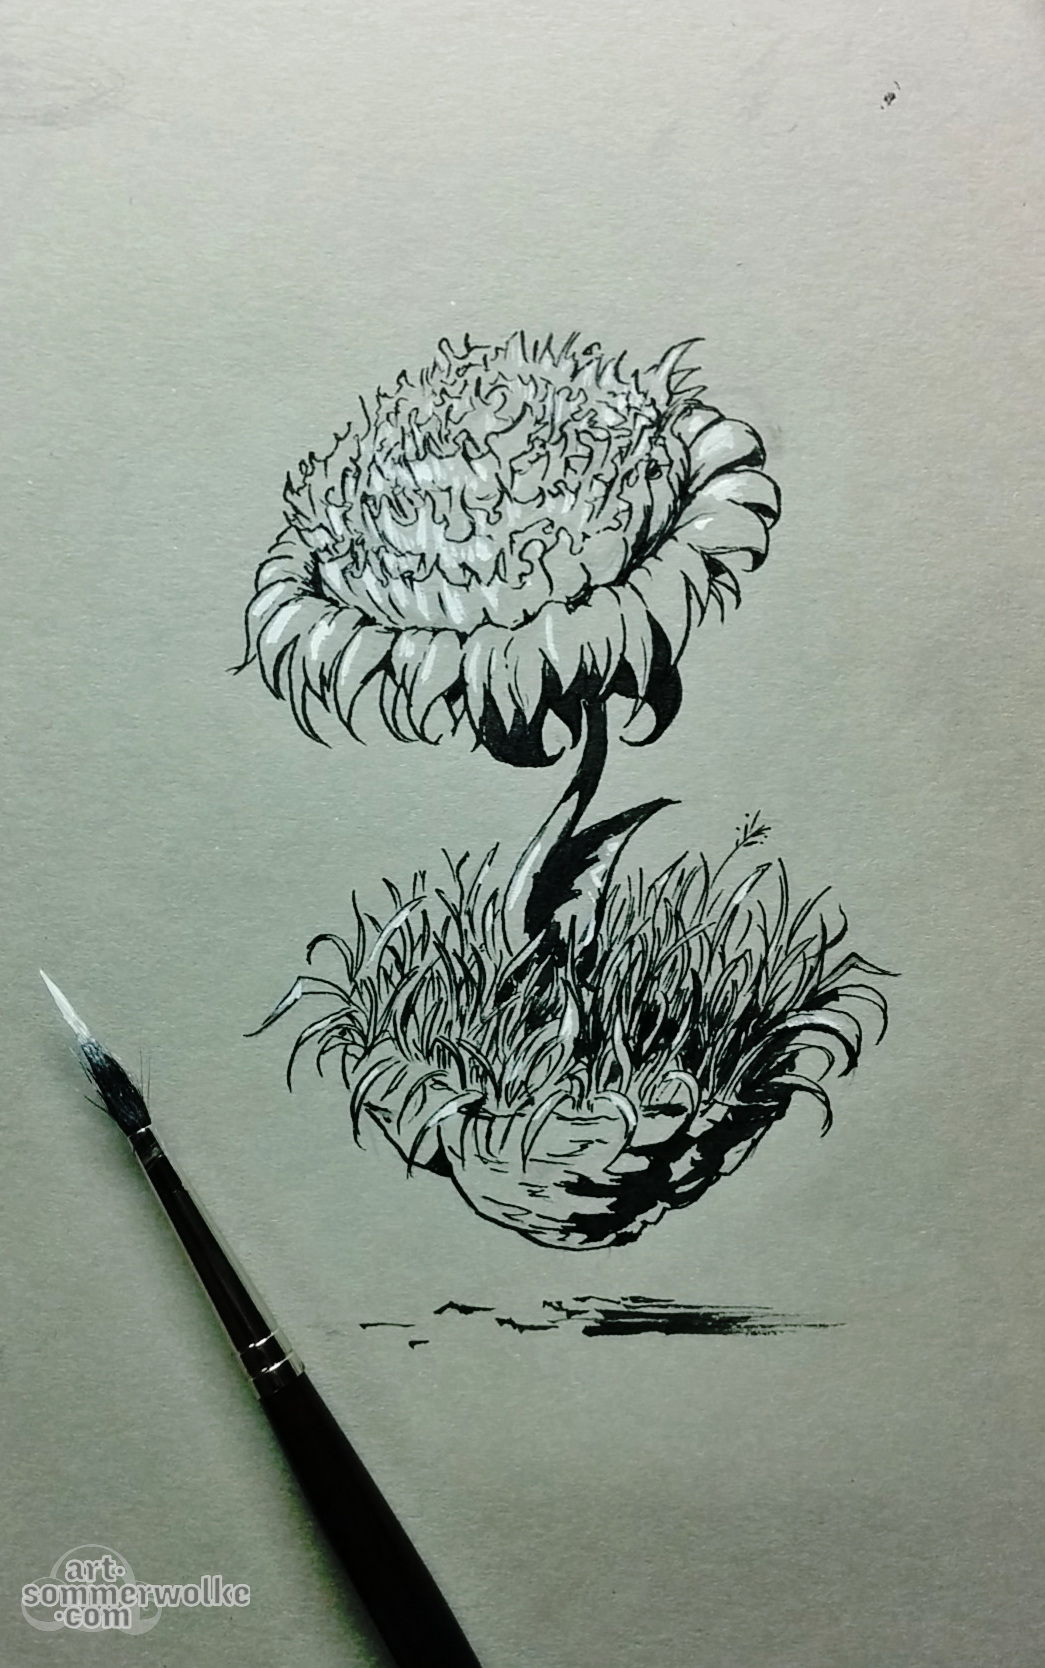 Tuschezeichnung einer schwebenden Pfingstrose. Ink drawing of a hovering peony flower.